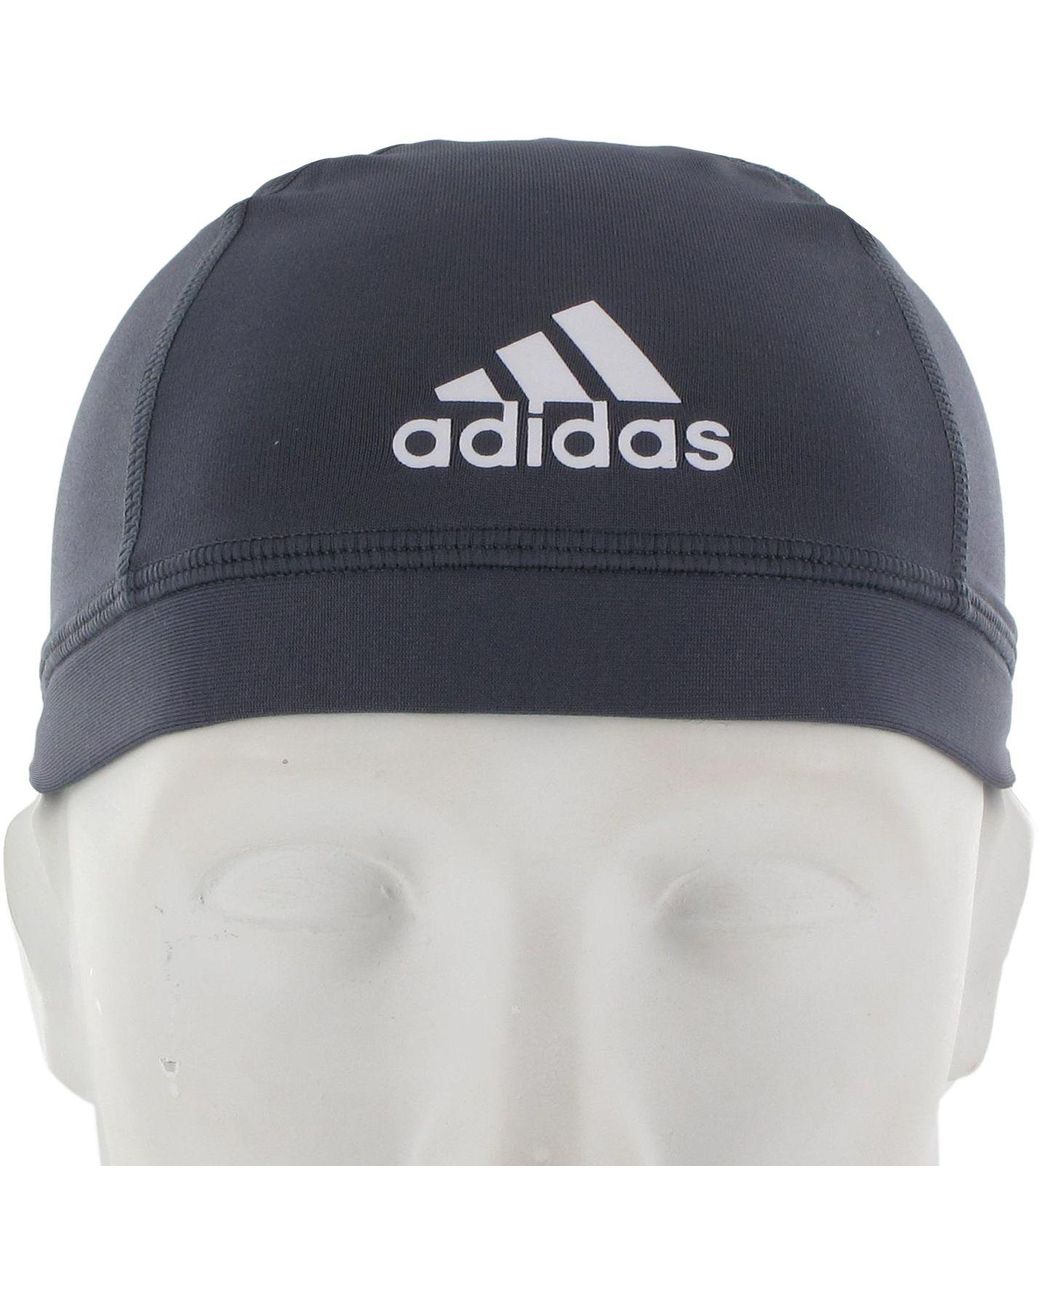 adidas skull cap